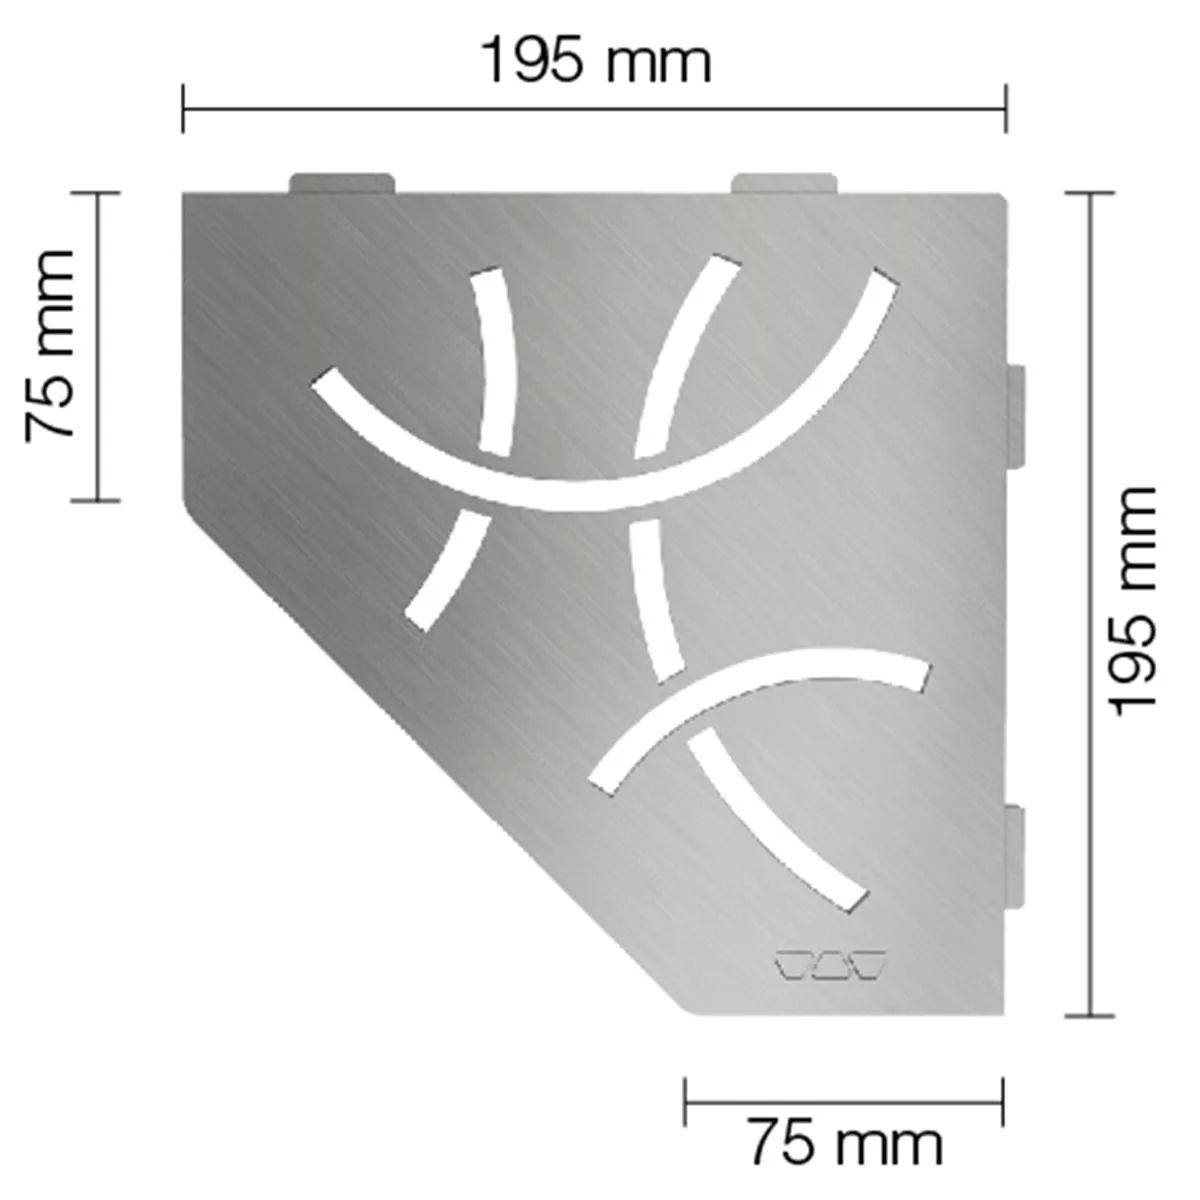 Mensola a muro Mensola per doccia Schlüter 5eck 19,5x19,5 cm Curva in acciaio inossidabile